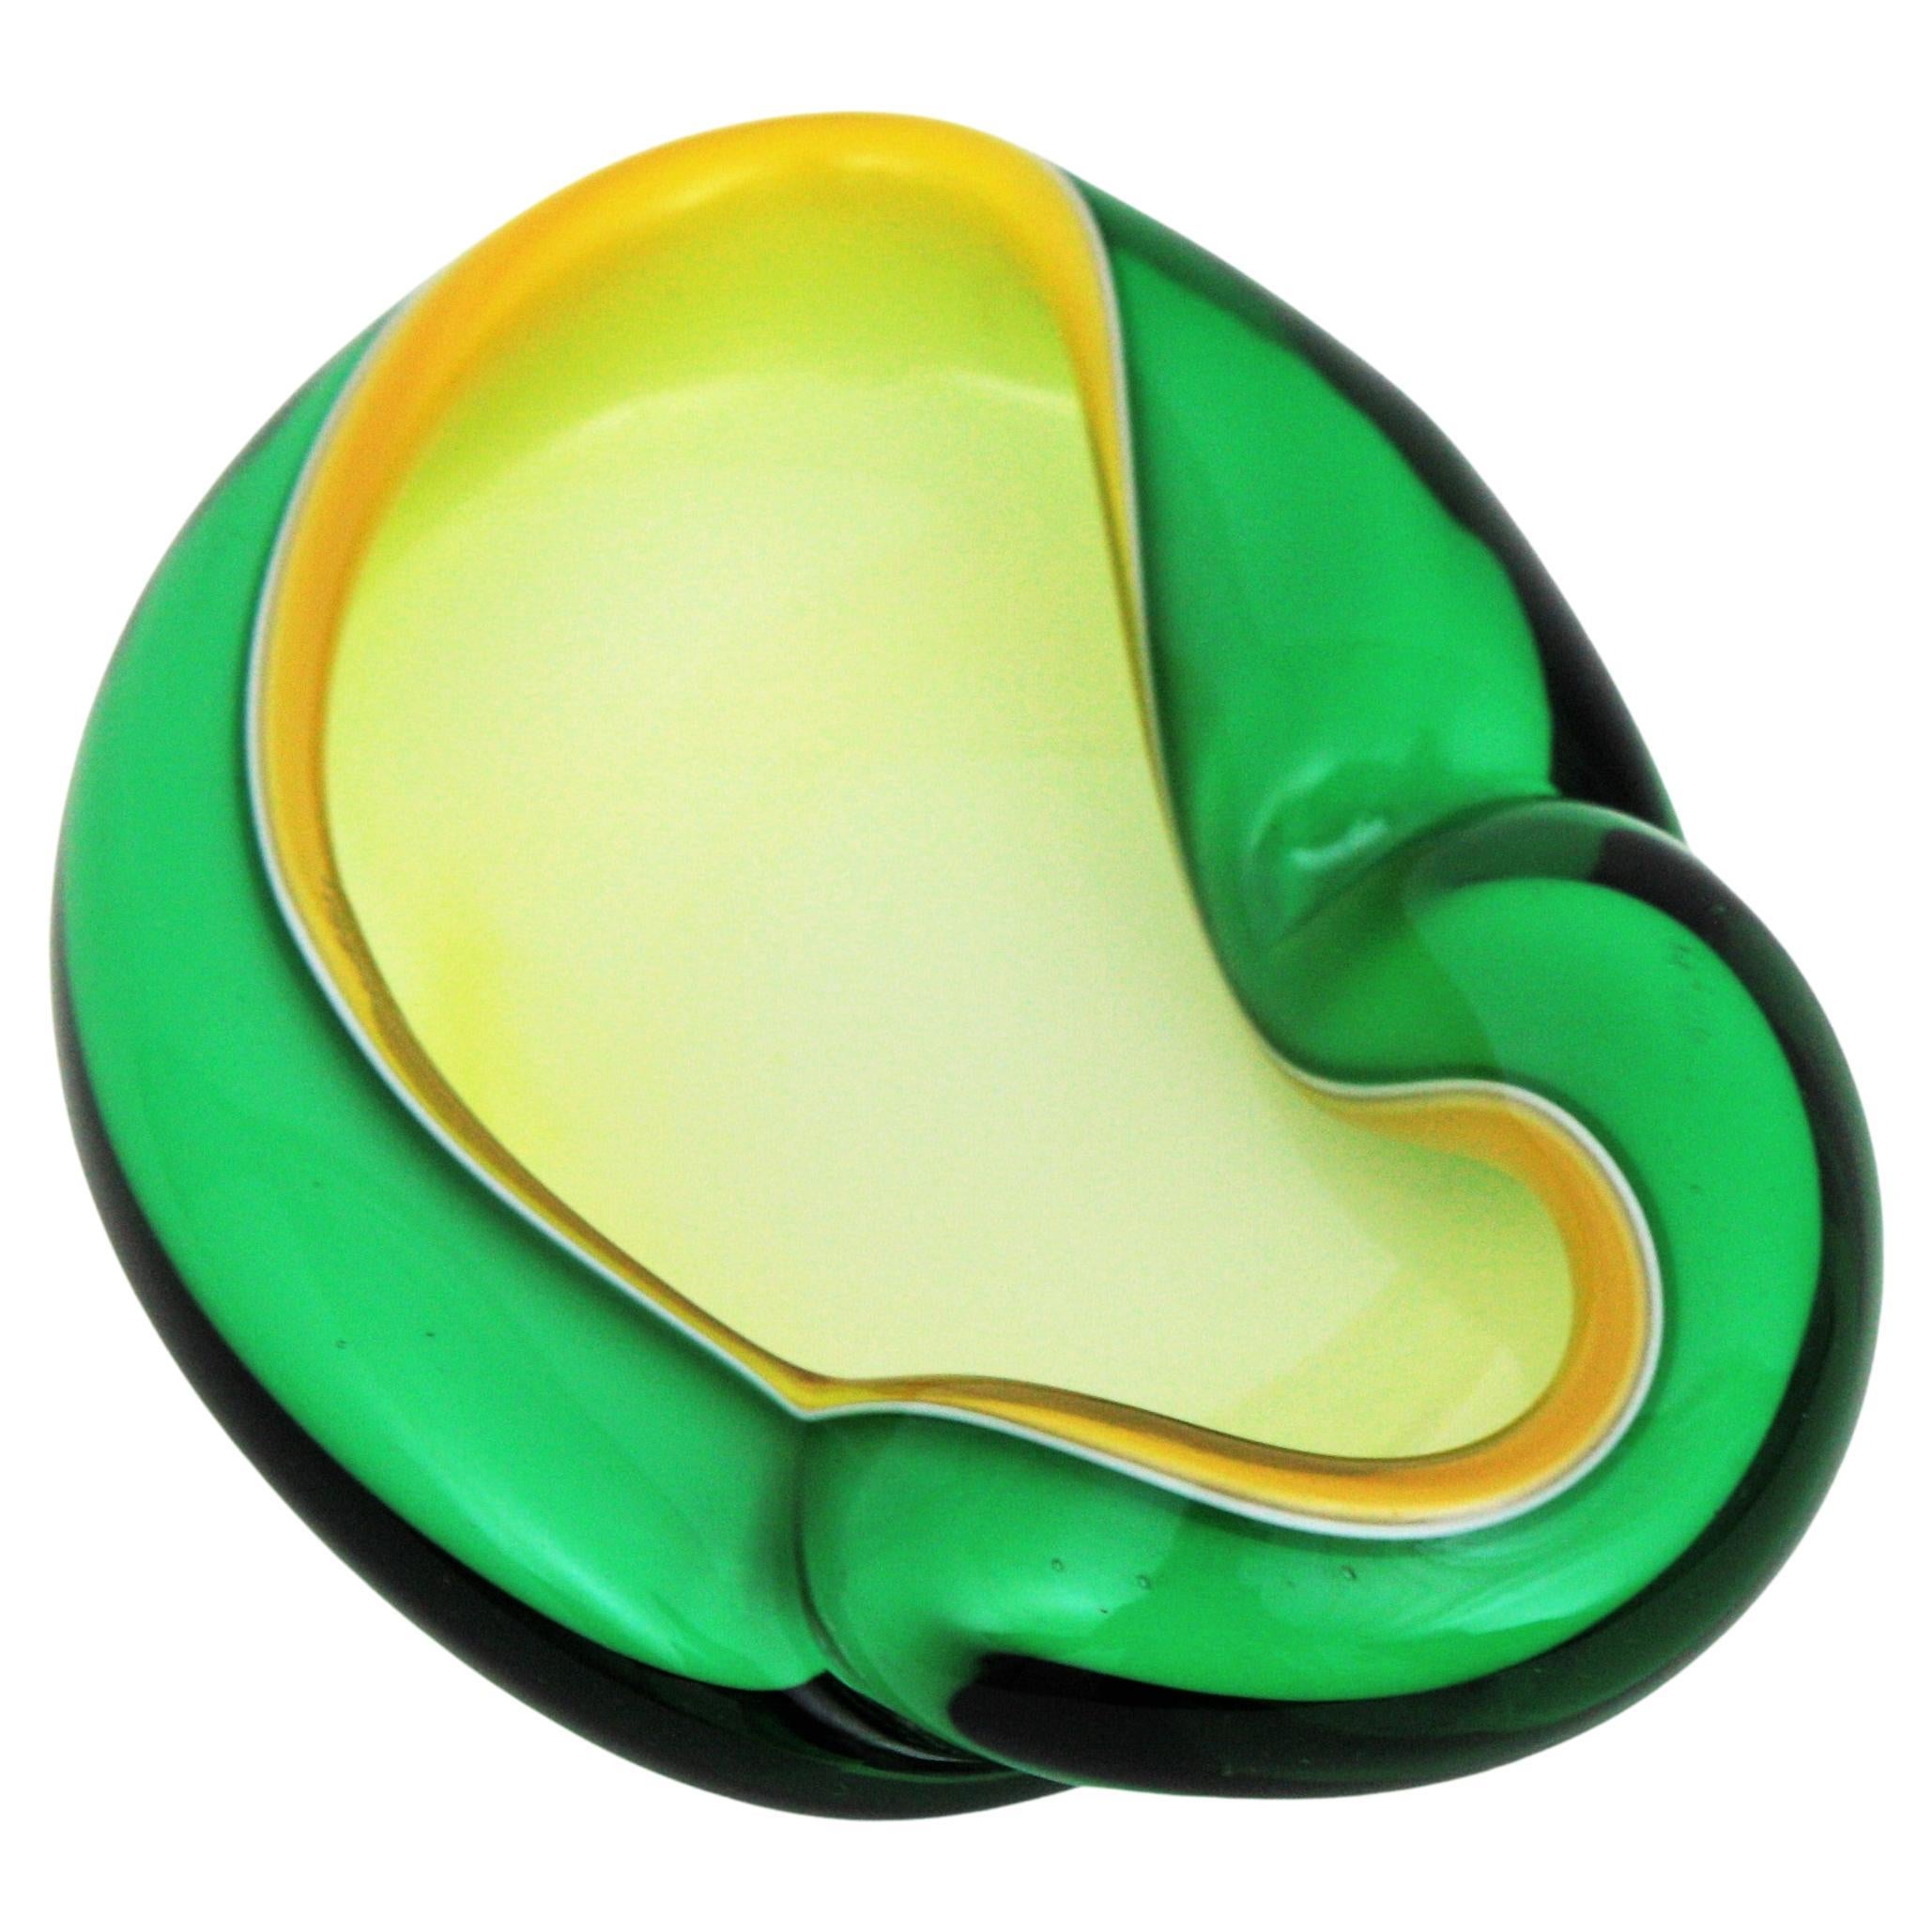 Alfredo Barbini Murano Biomorphic Sommerso Green Yellow White Art Glass Bowl